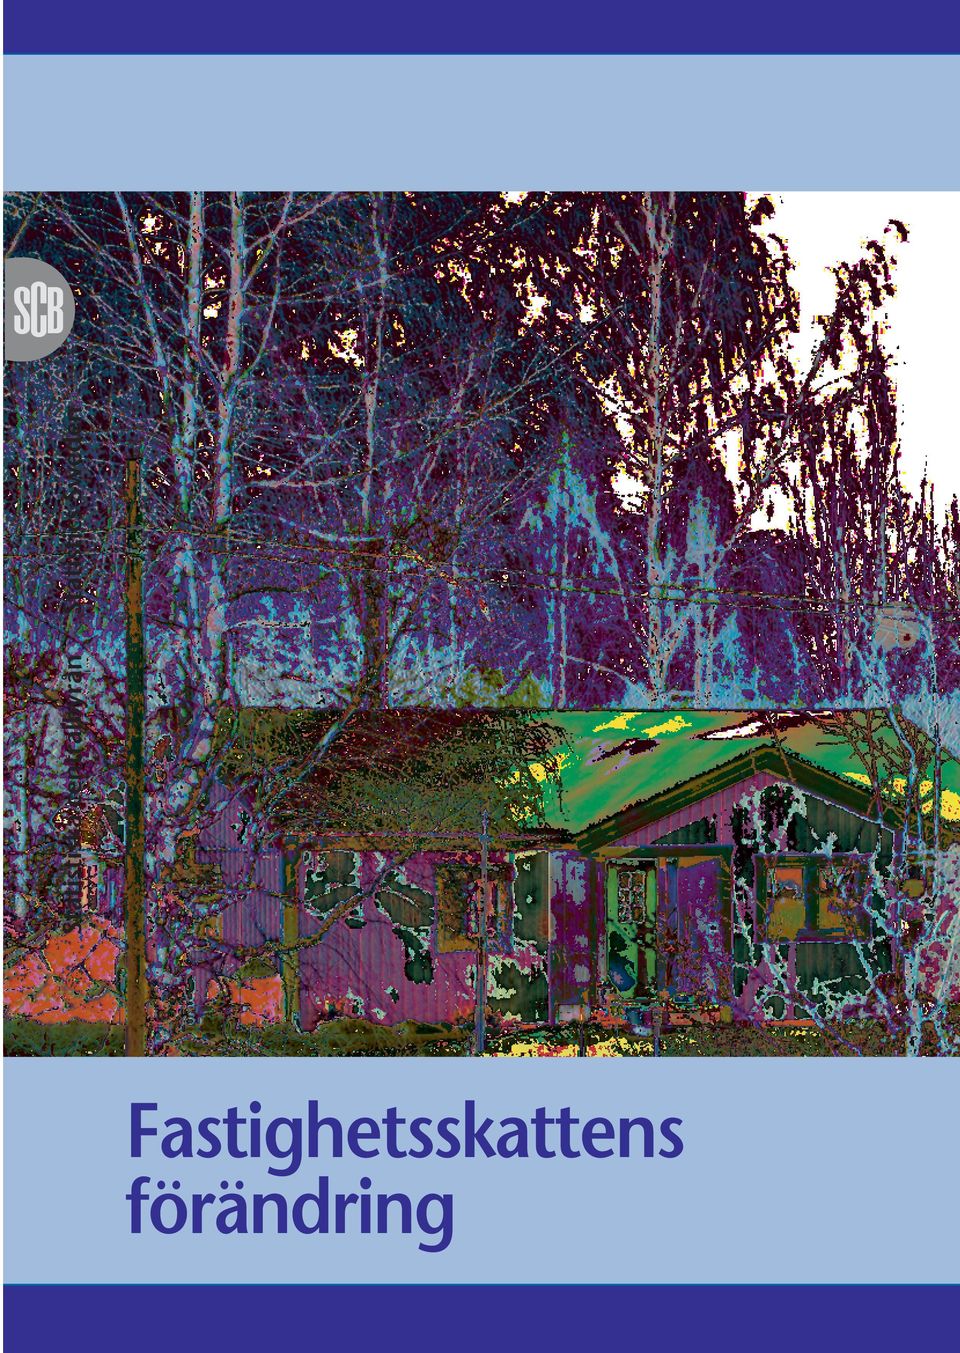 Försäljning över disk, besöksadress: Biblioteket, Karlavägen 100, Stockholm. Publication services: E-mail: publ@scb.